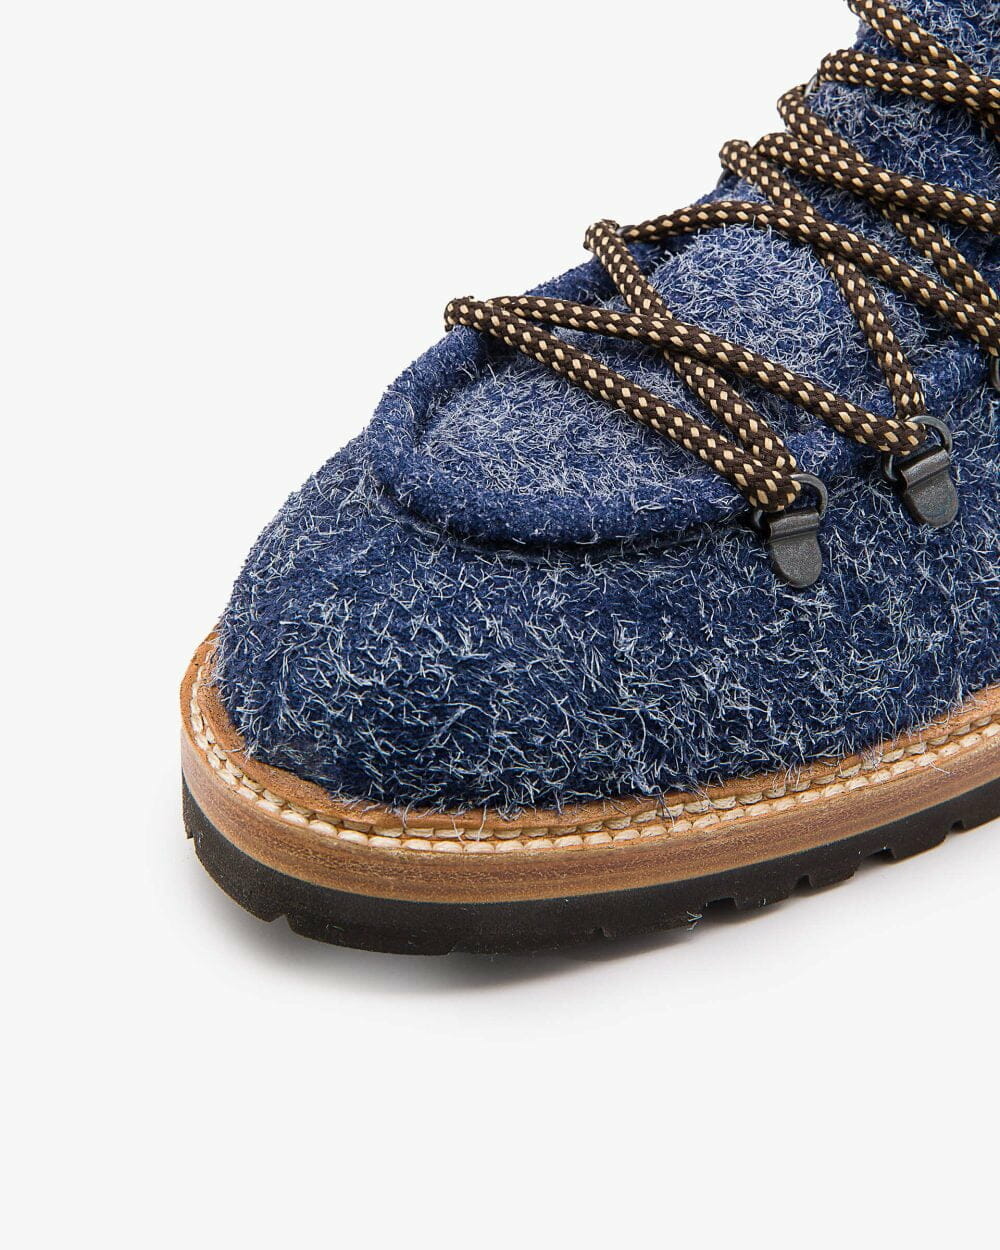 montblanc-Boots-frost-effect-suede-bois-blue-toe-cap